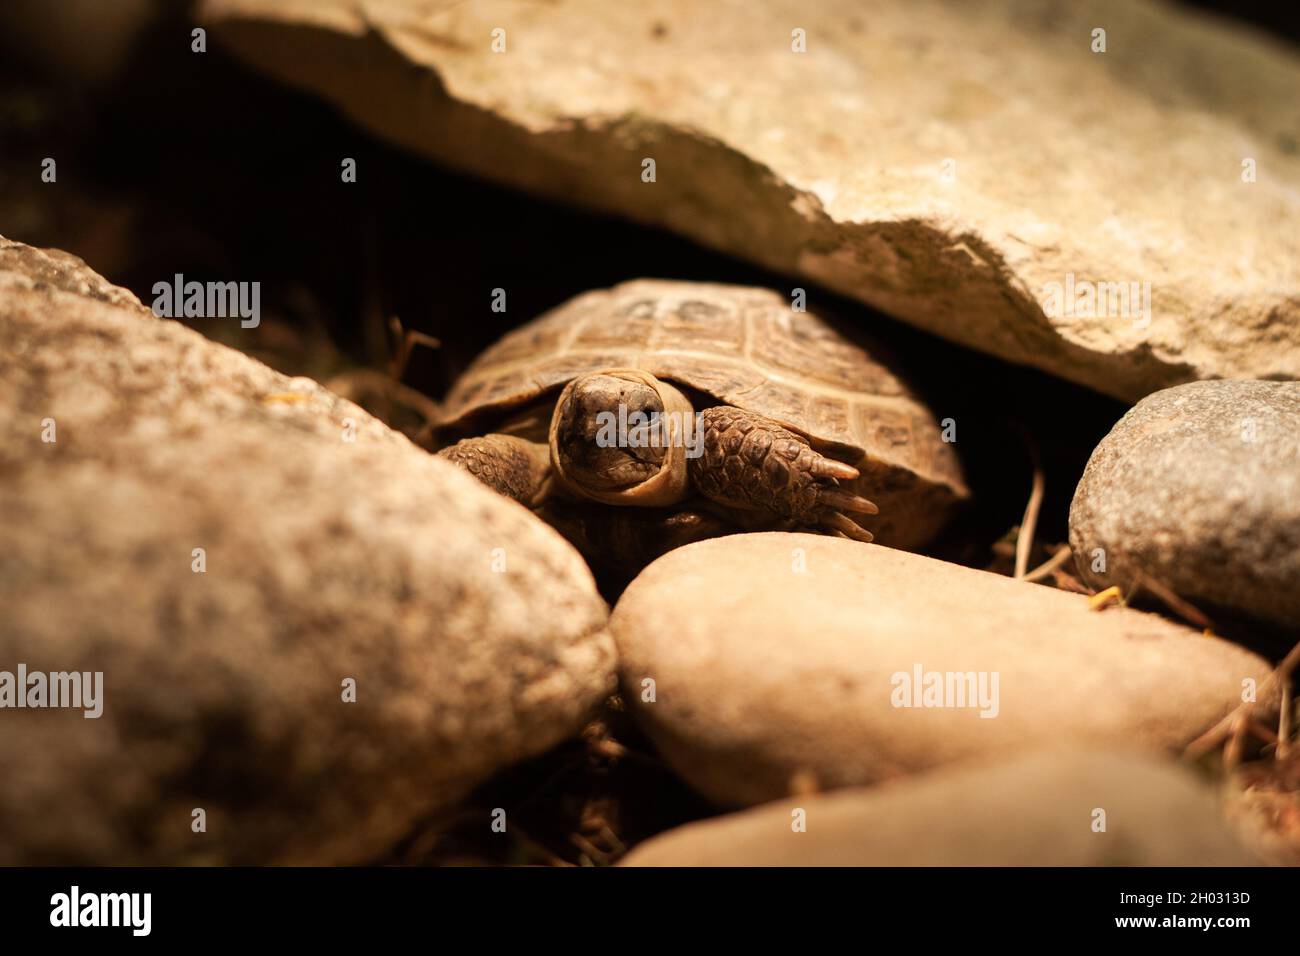 Kleine russische Schildkröte, die ihren Kopf und ihre Beine teilweise in der Schale versteckt | kleine Steppenschildkröte, die sich in der Karaffe, zwischen Felsen, Schildkröte unter Glühbirne versteckt Stockfoto